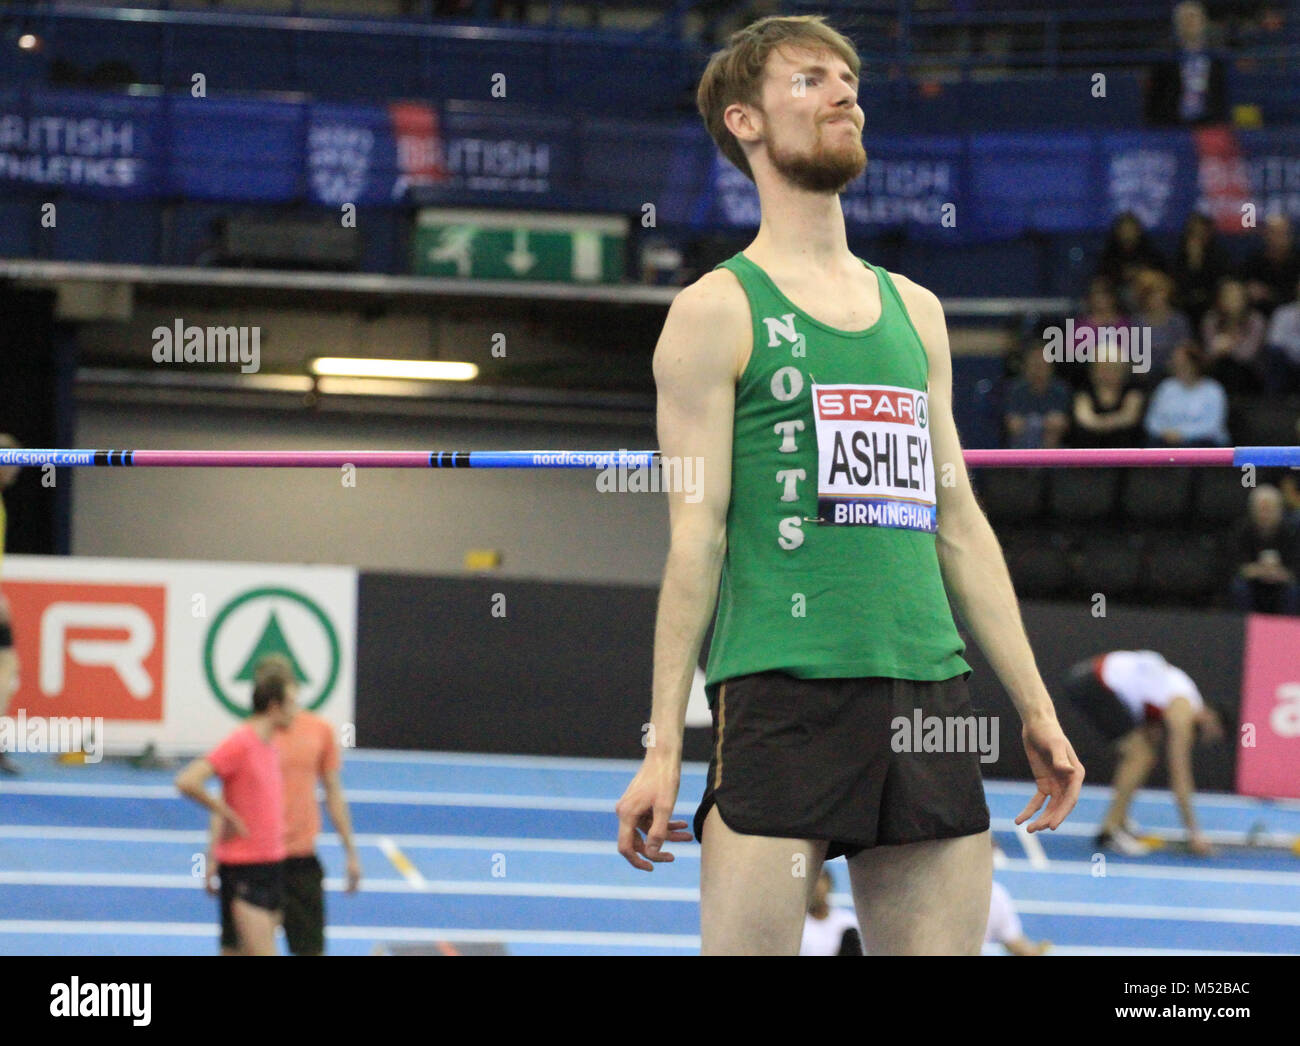 Von Sheffield Matthew Ashley blickt in die Menge nach seinem Sprung am britischen Indoor Championships in Birmingham. Stockfoto